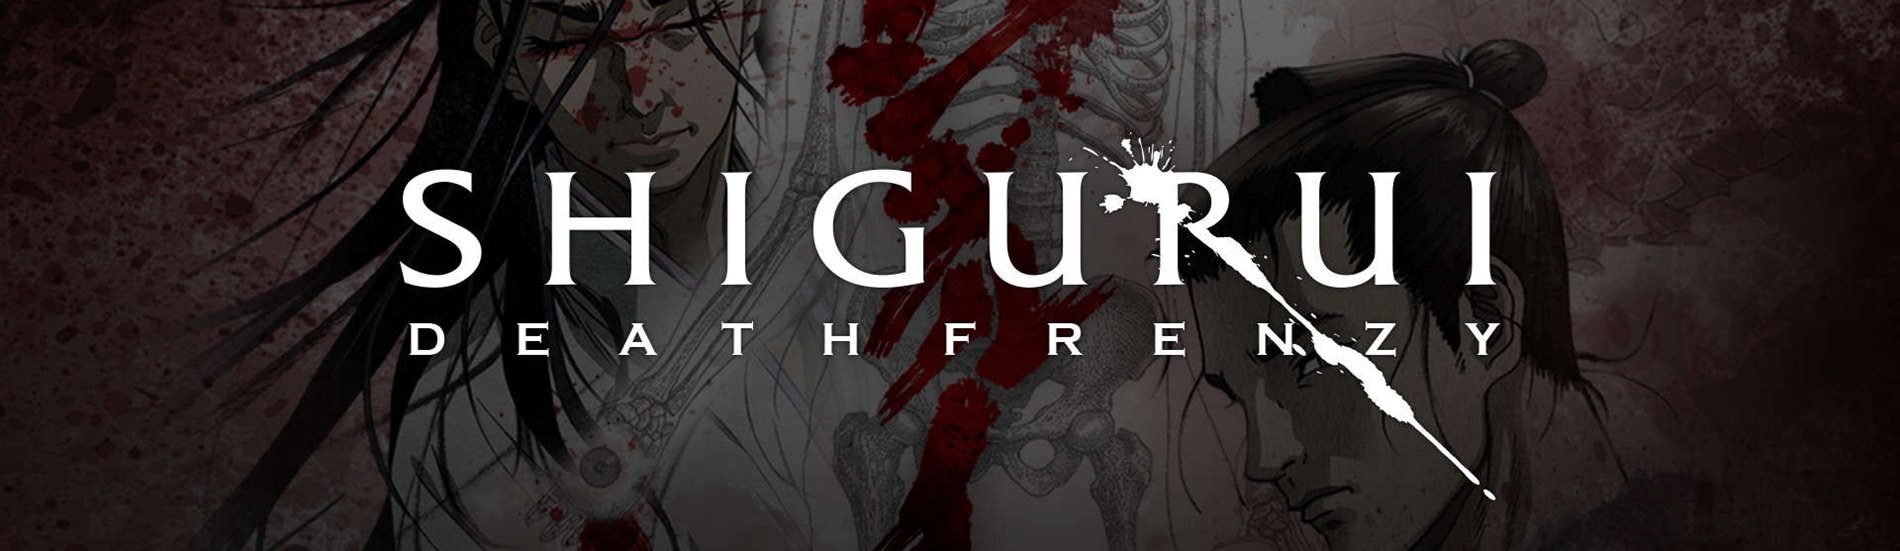 Banner for Shigurui: Death Frenzy